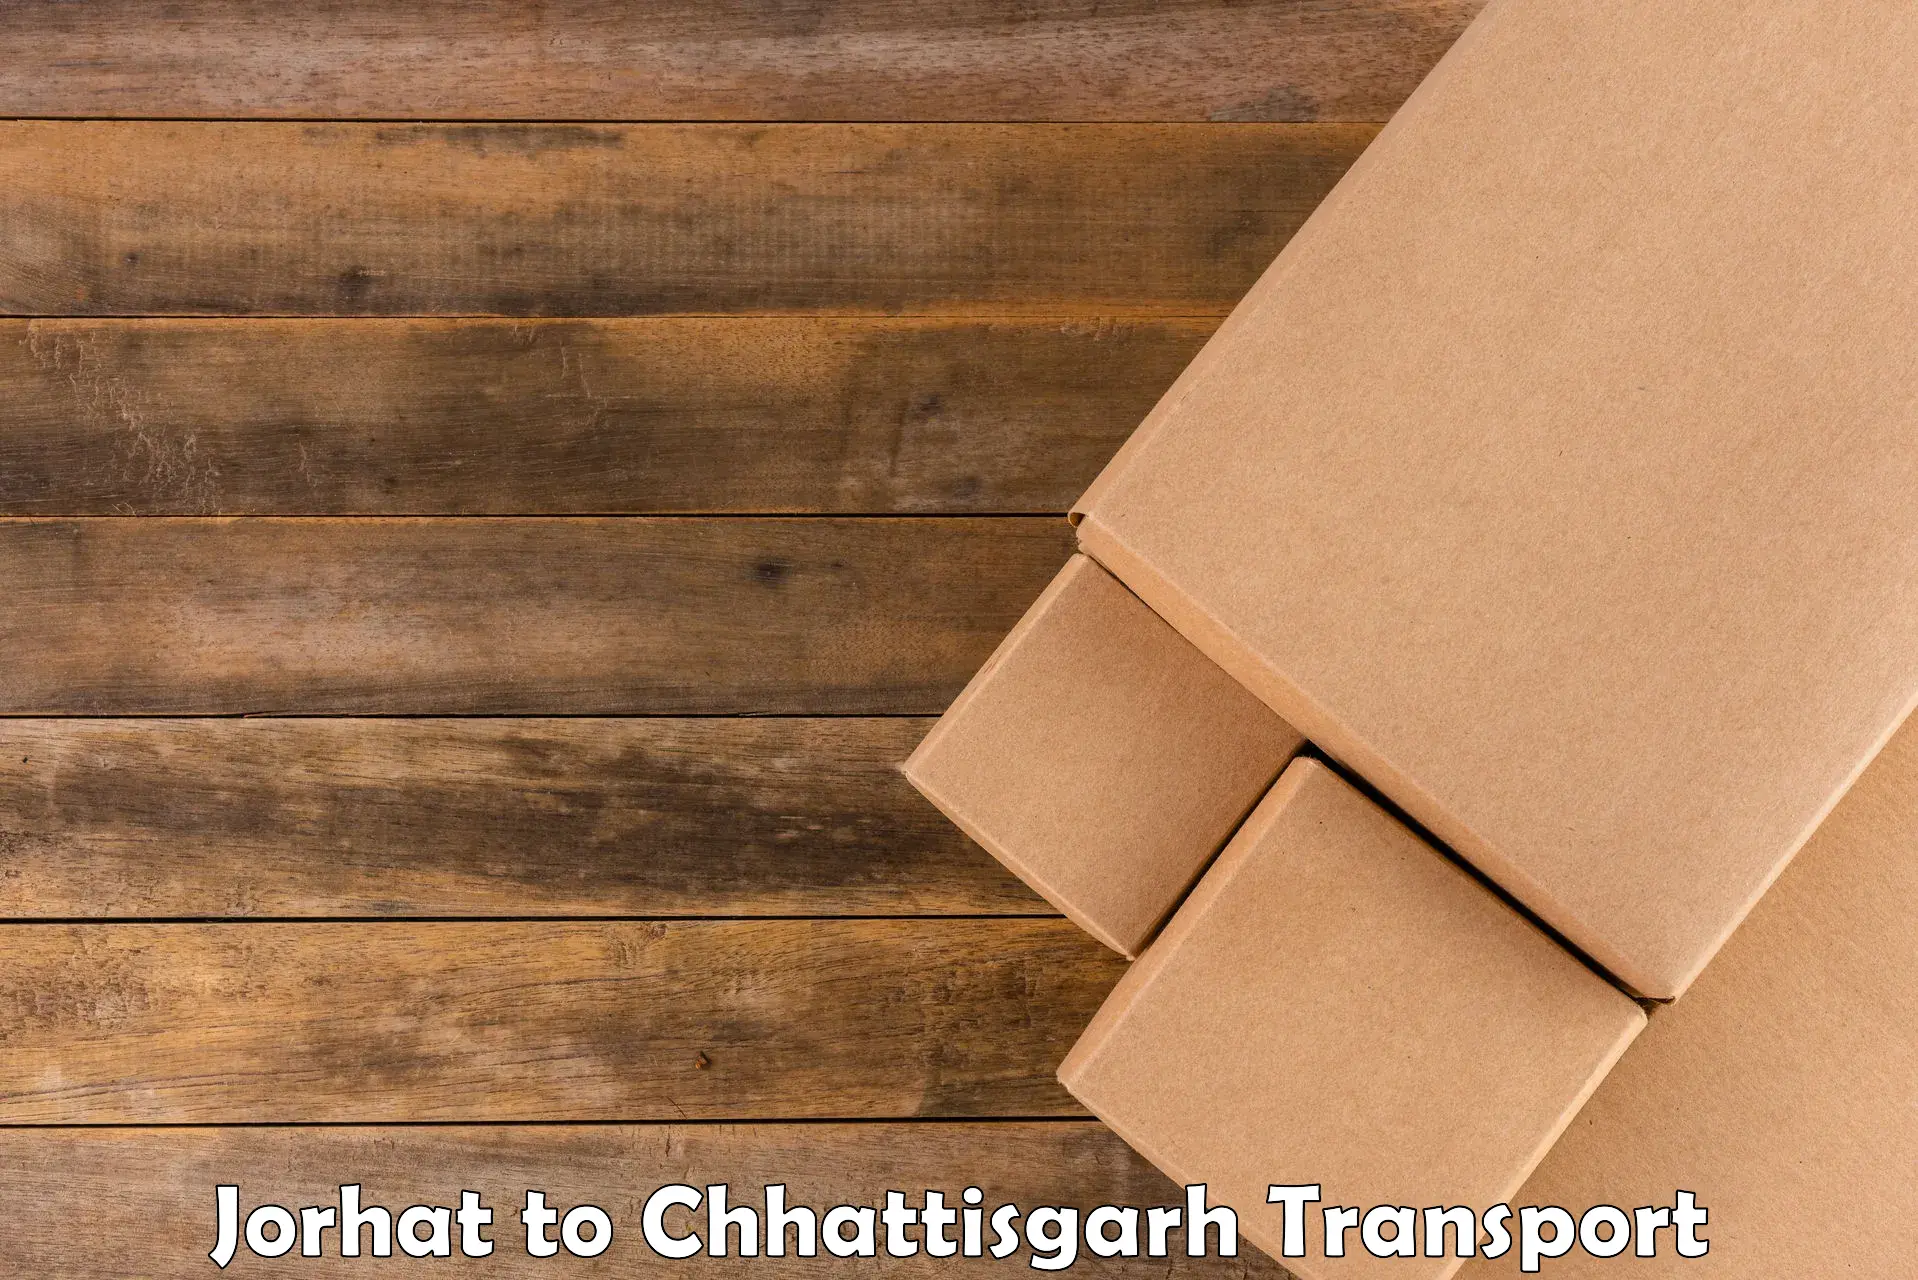 Road transport online services Jorhat to Bijapur Chhattisgarh